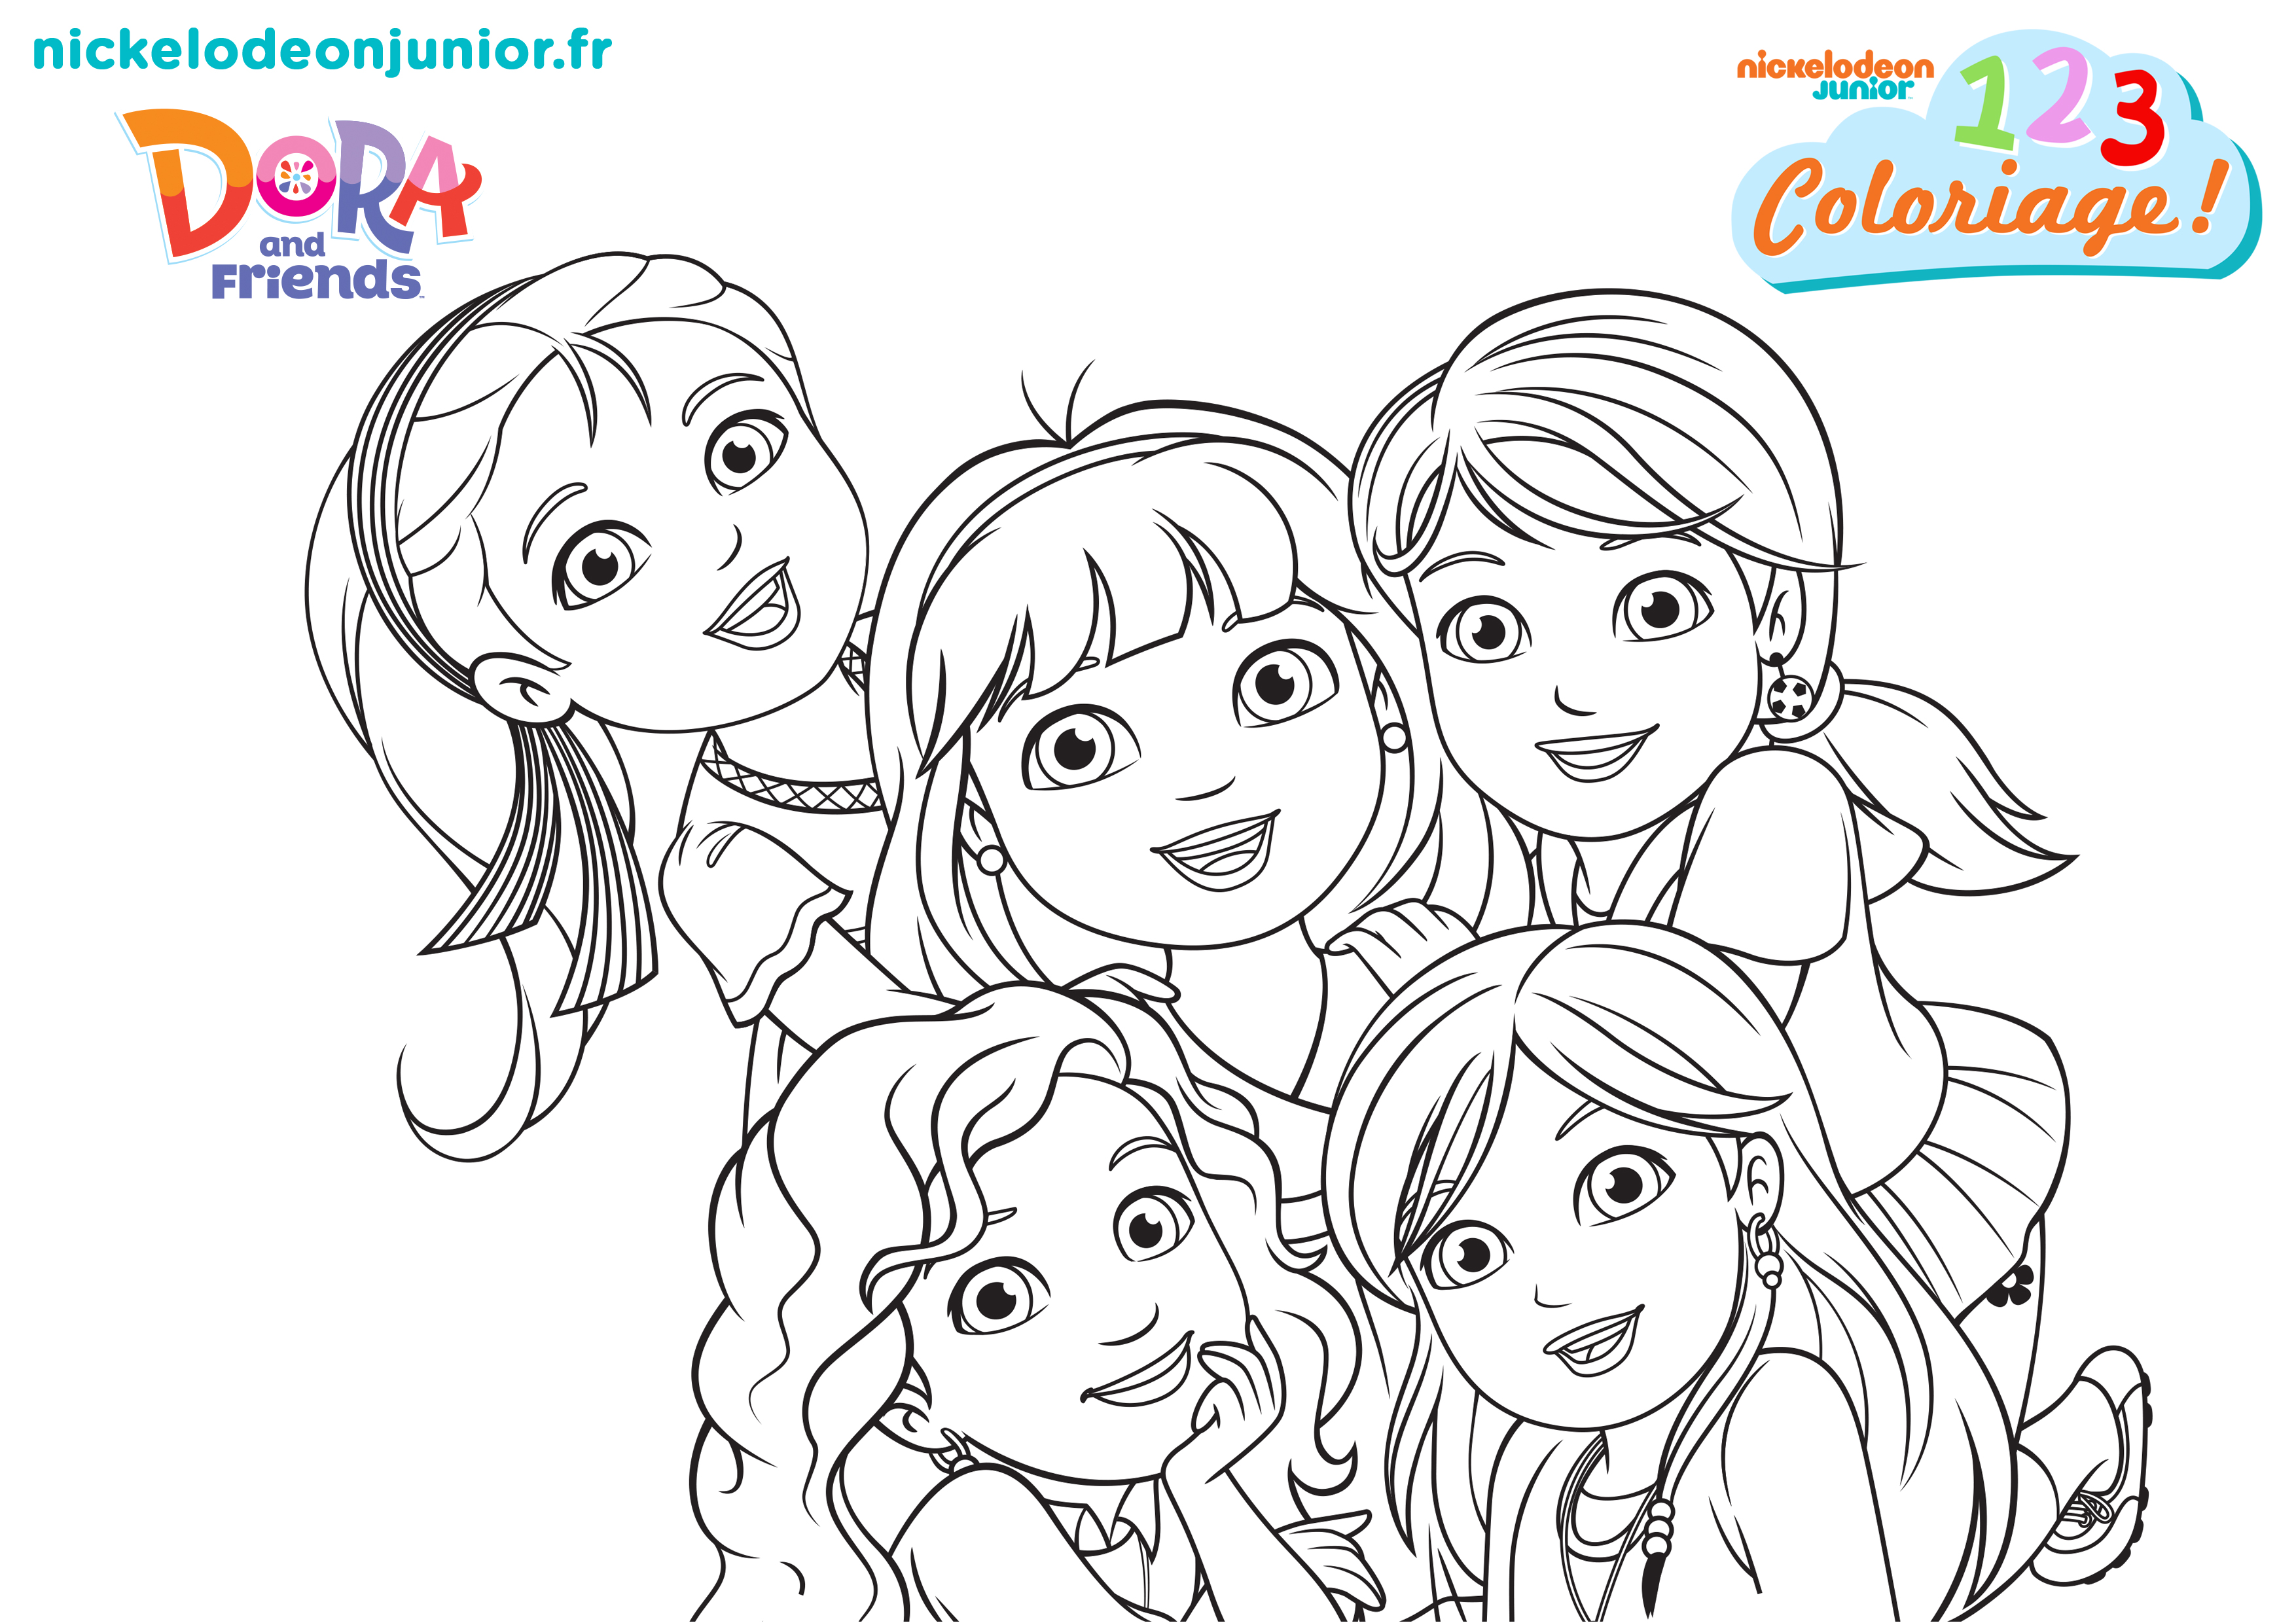 1, 2, 3... Coloriage ! | Dora and Friends : au coeur de la ...